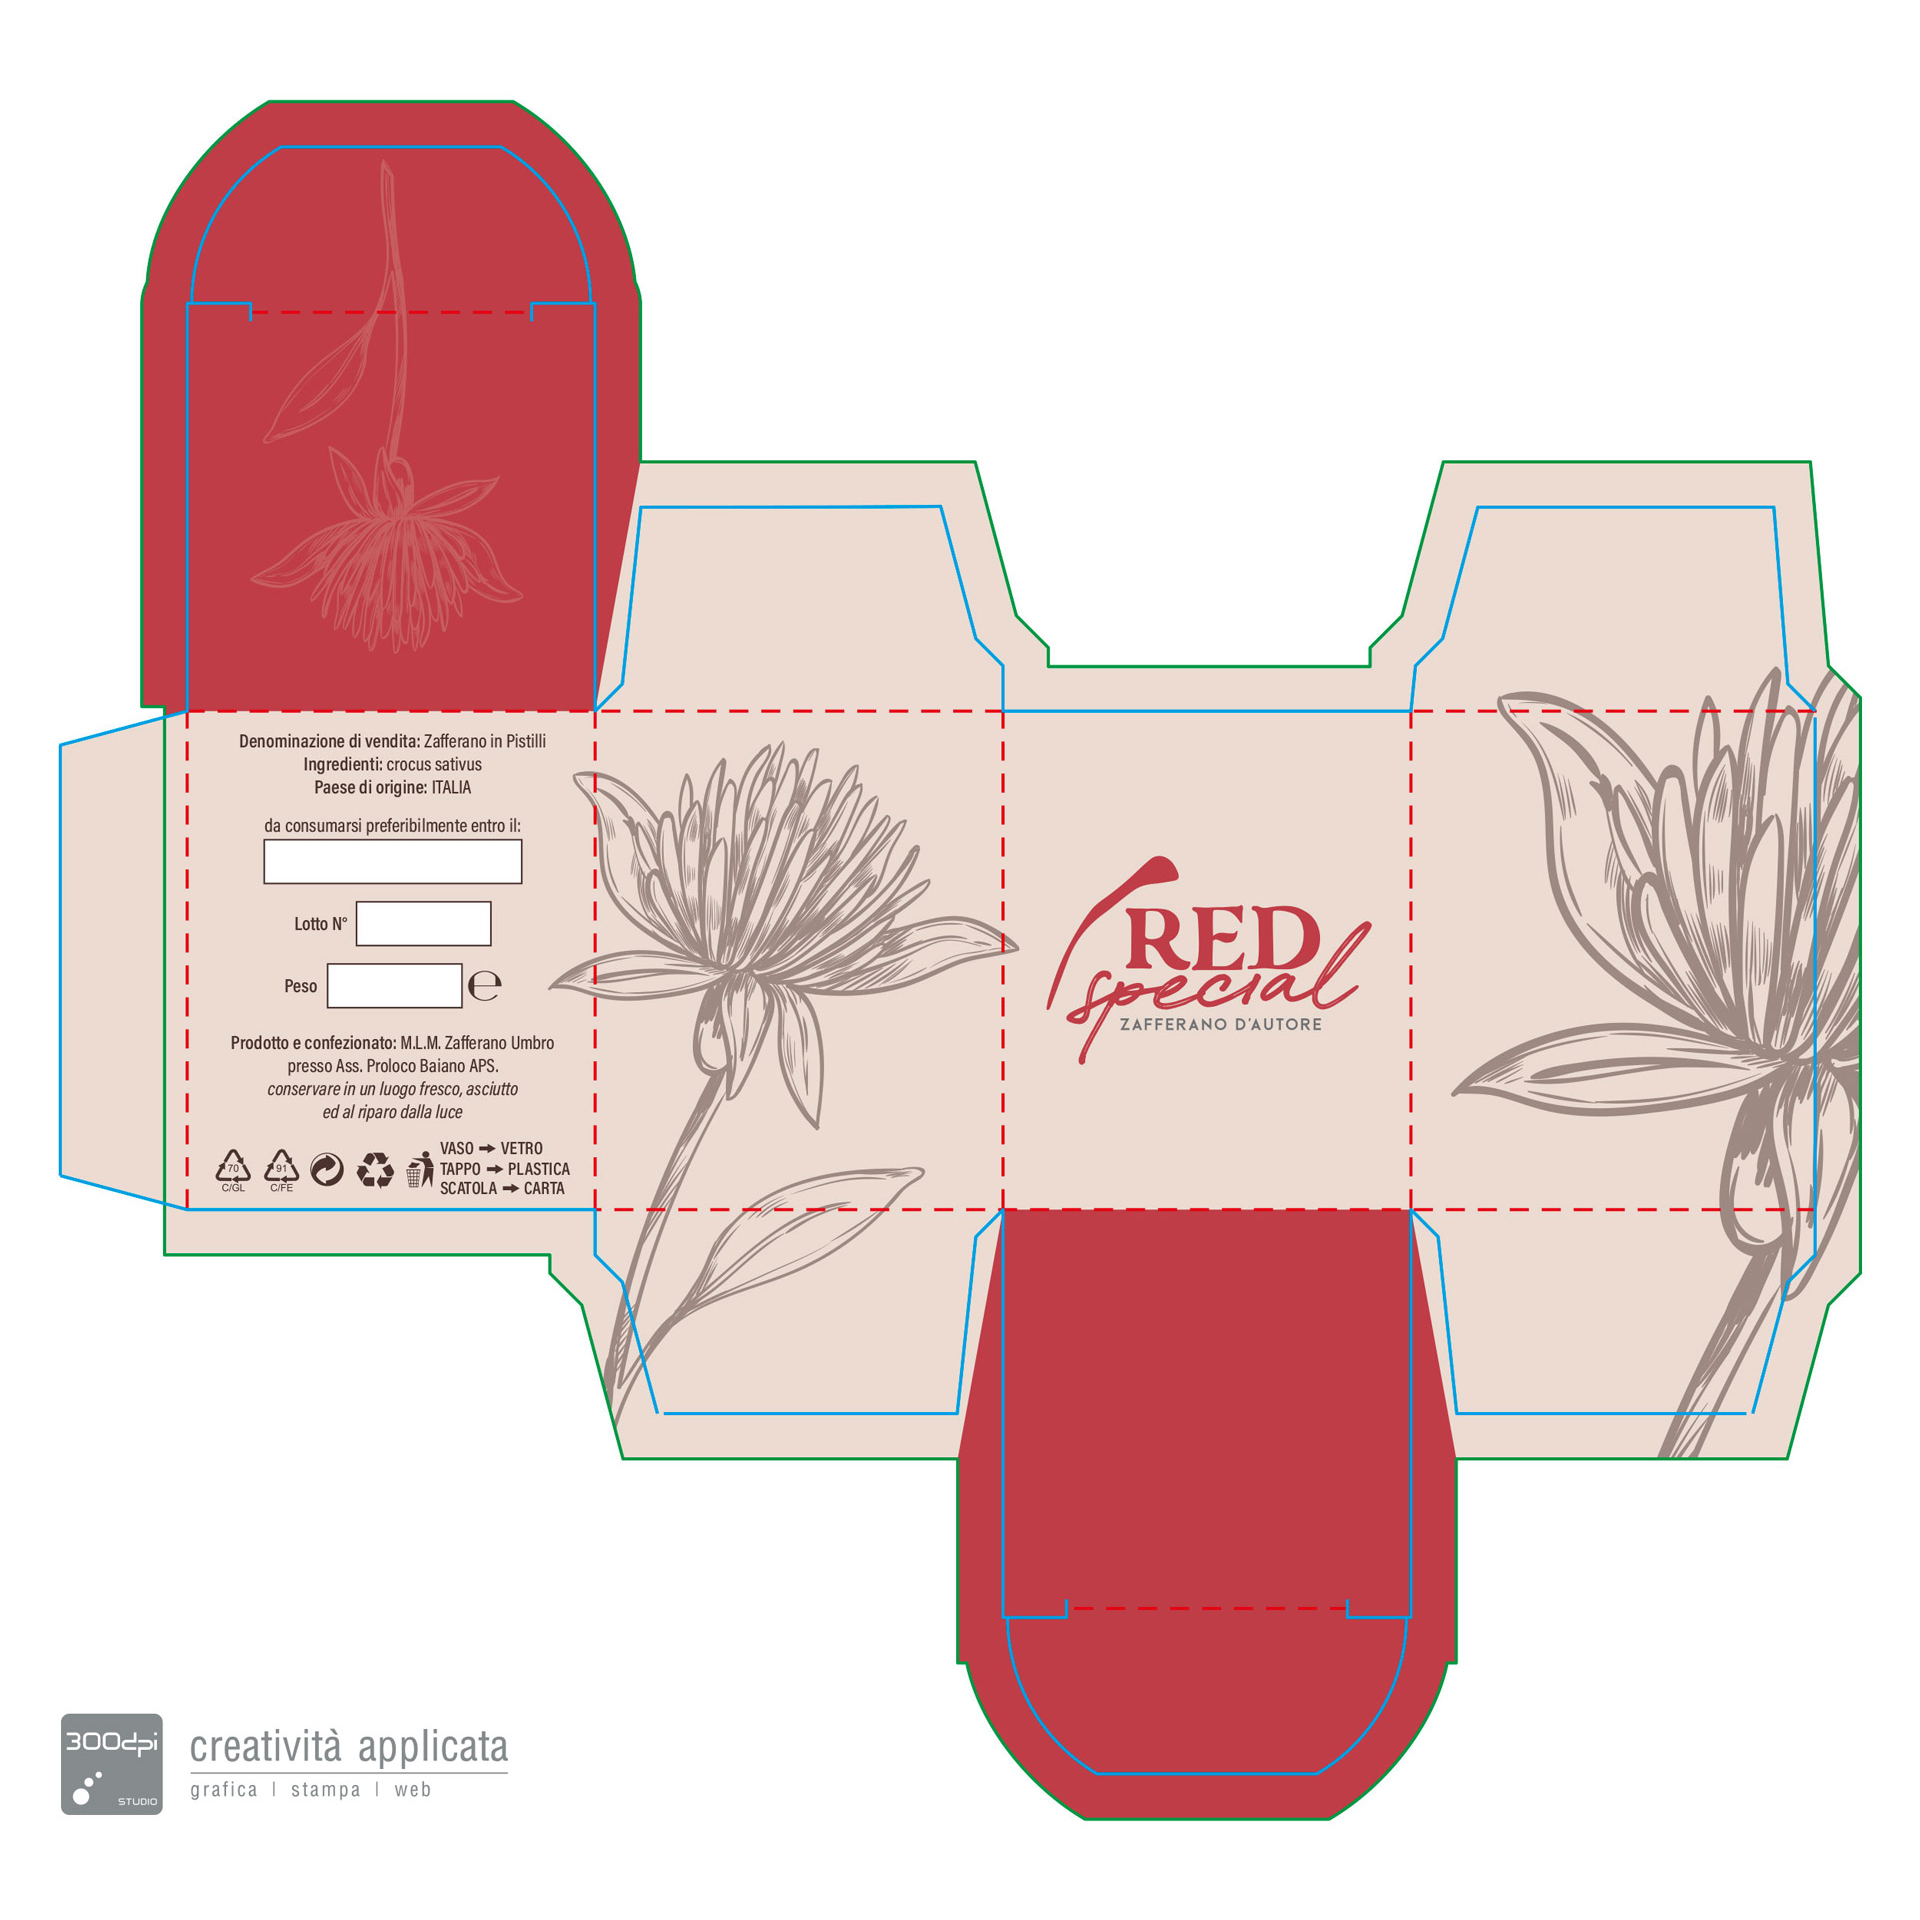 Red Special - Zafferano d'Autore progetto packaging - 300dpi STUDIO